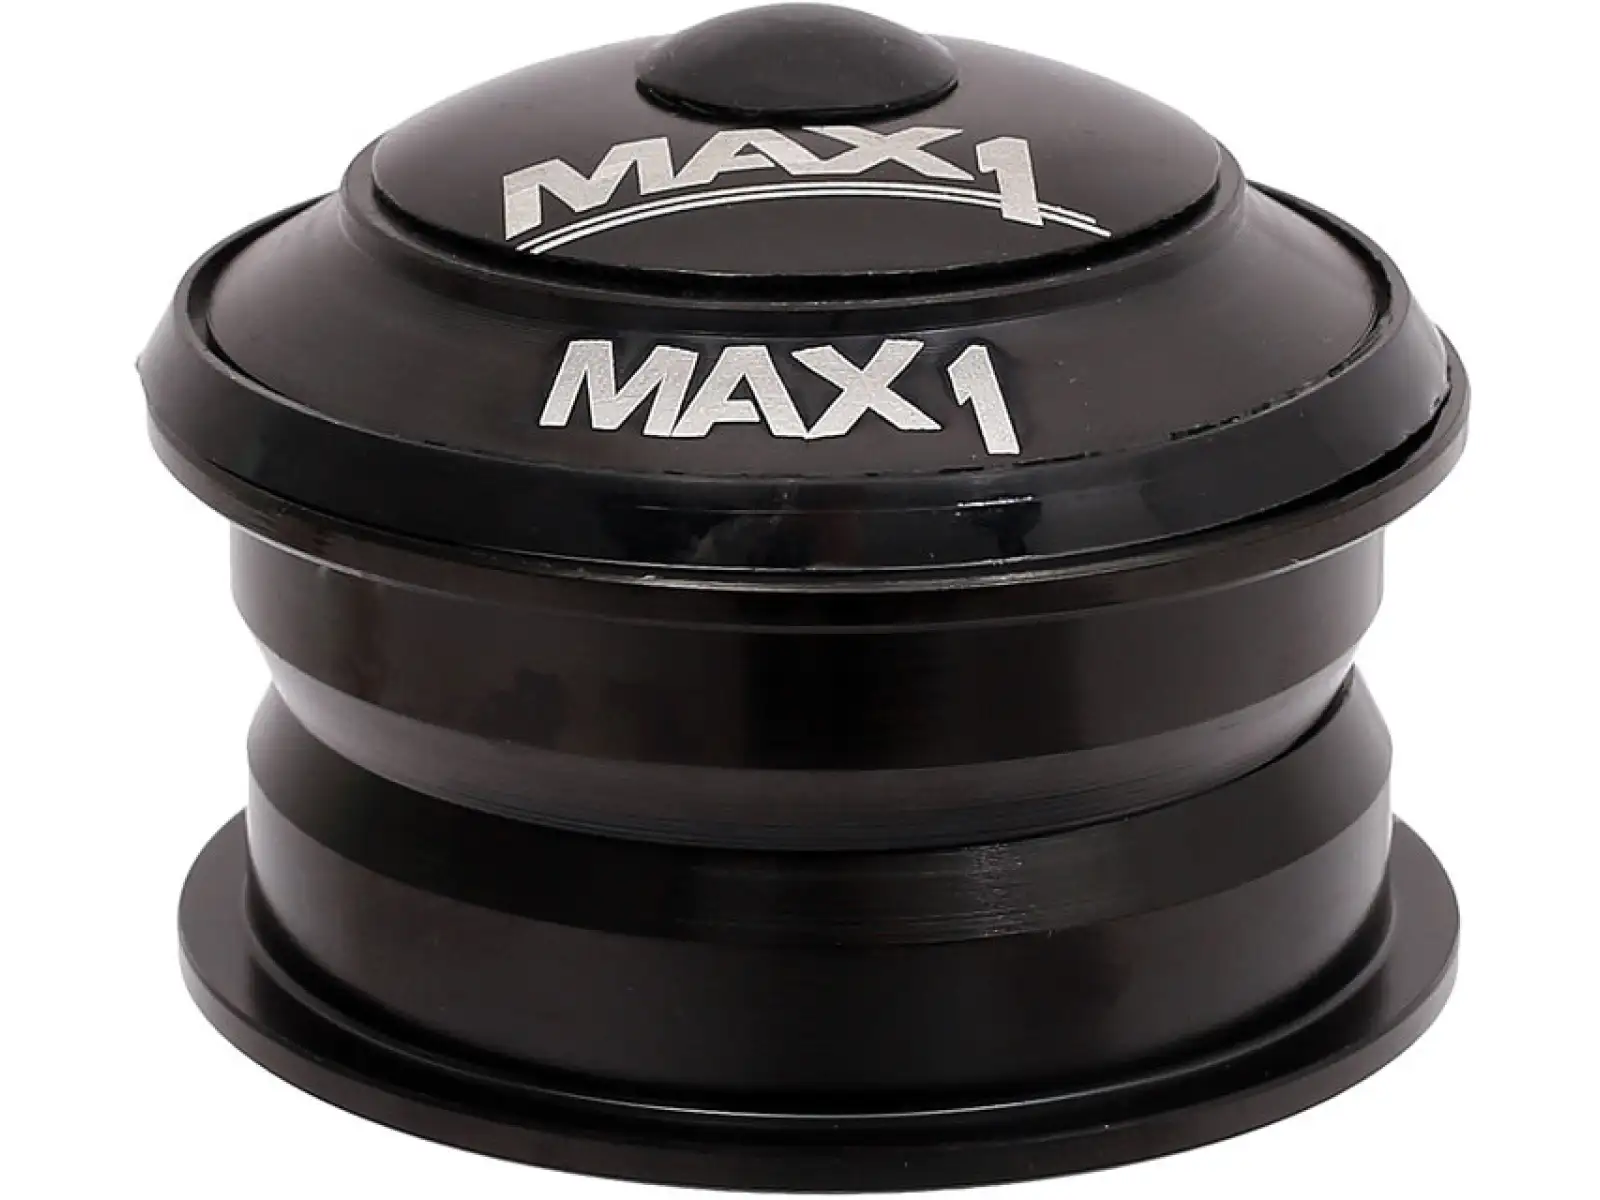 MAX1 1 1/8" semi-integrované hlavové složení černé ACB ložiska